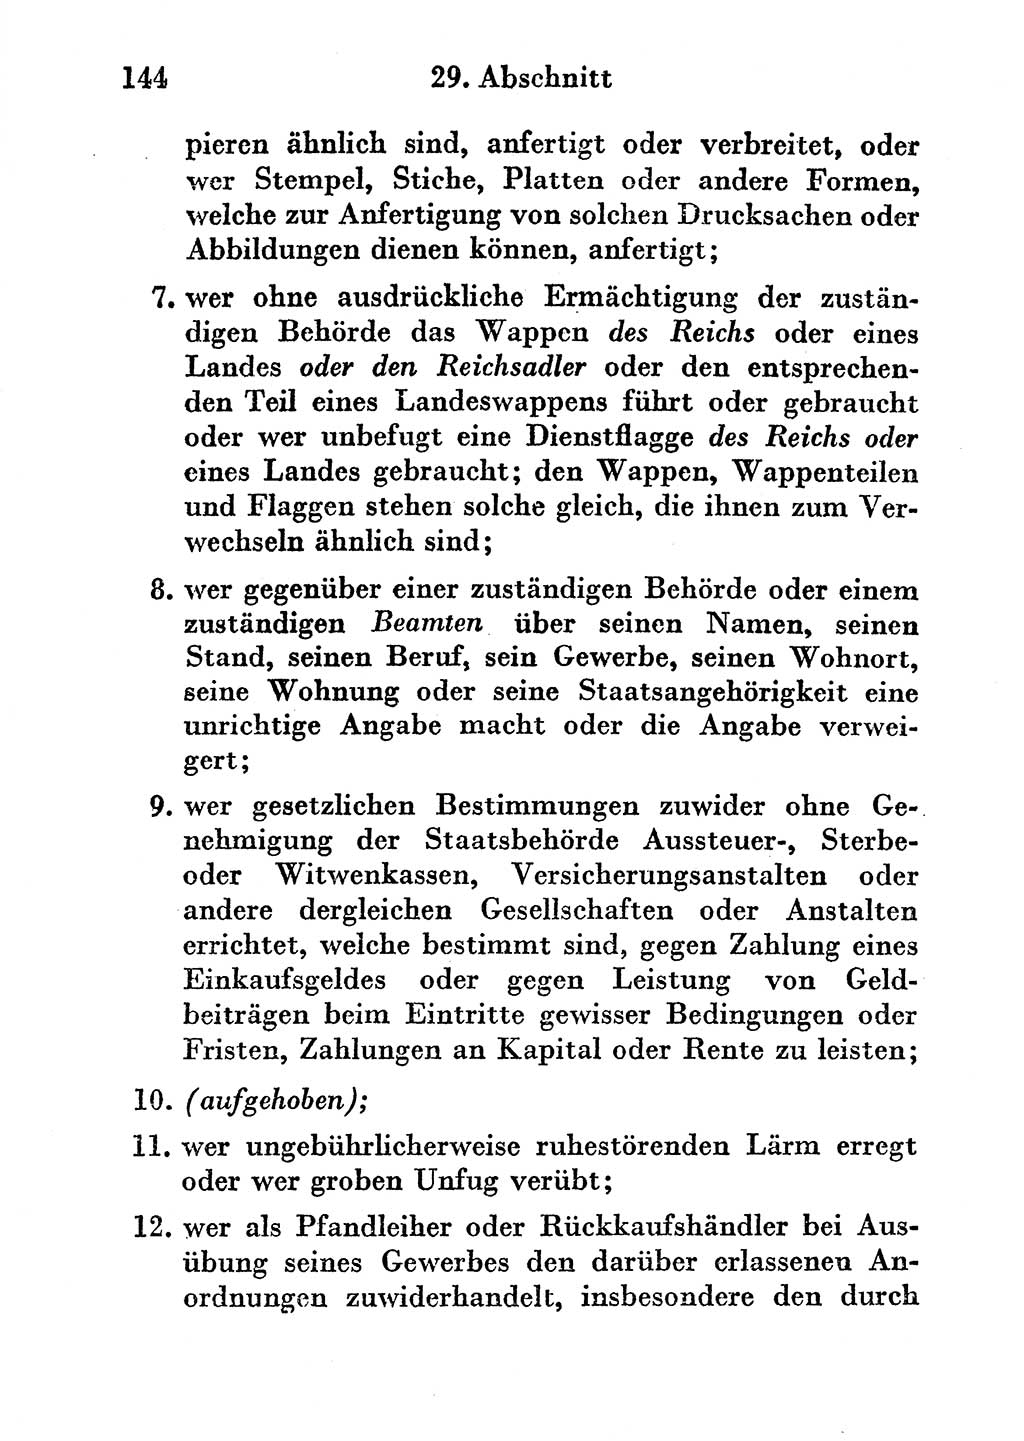 Strafgesetzbuch (StGB) und andere Strafgesetze [Deutsche Demokratische Republik (DDR)] 1956, Seite 144 (StGB Strafges. DDR 1956, S. 144)